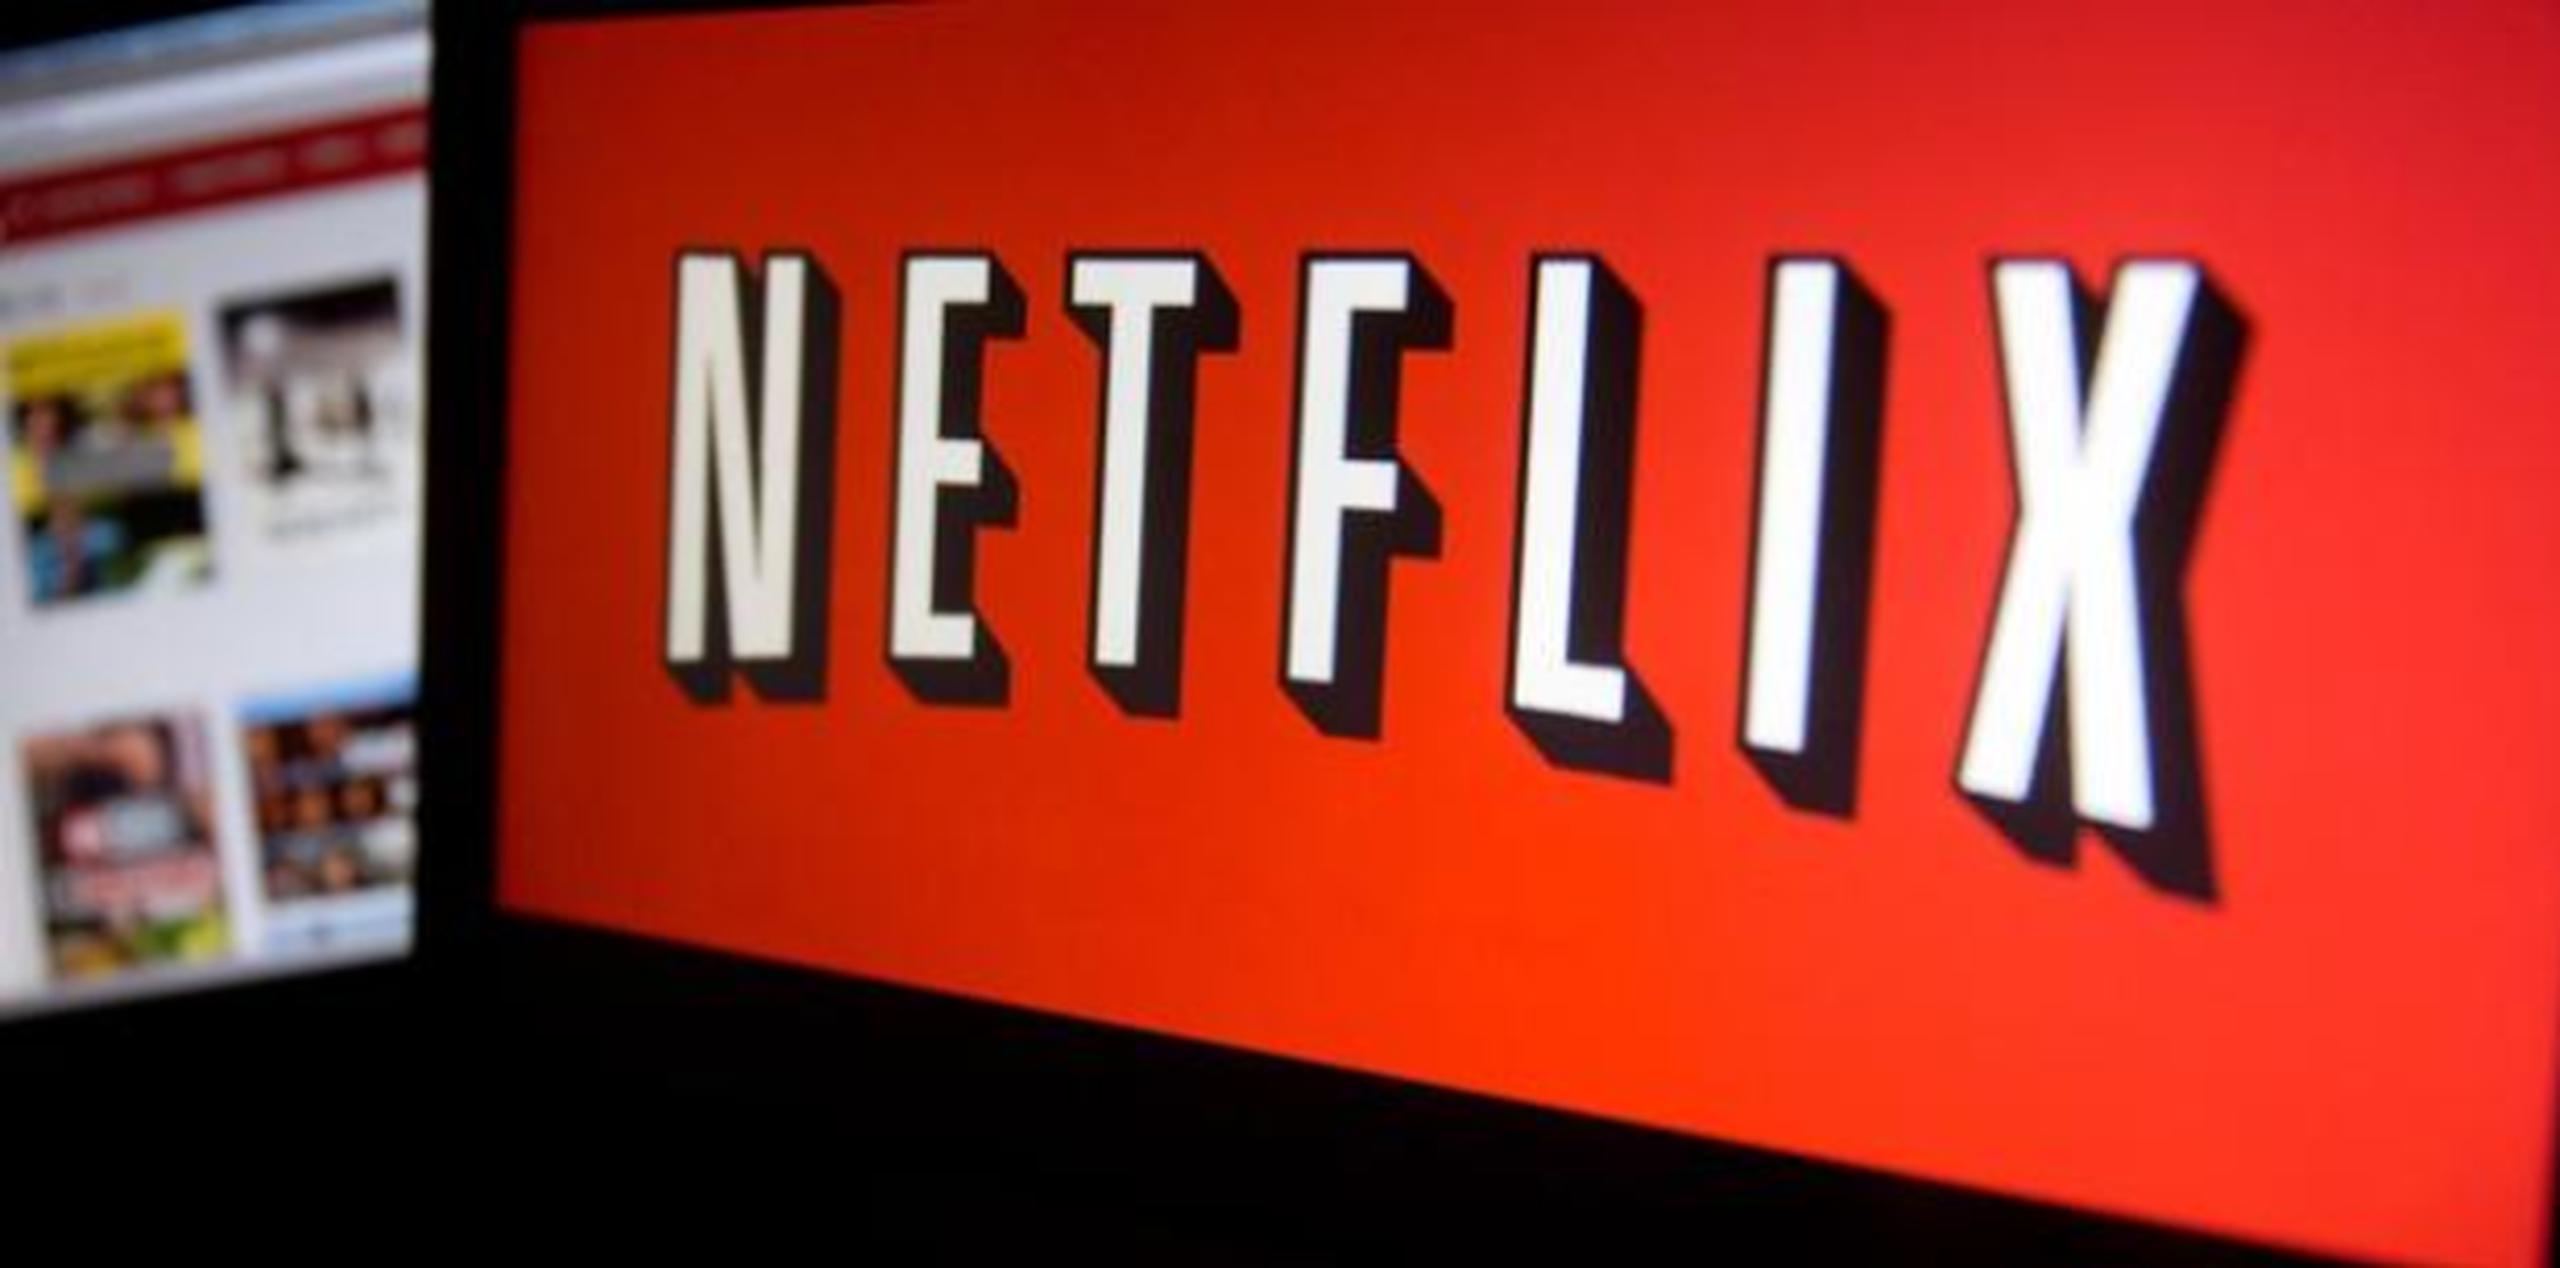 Netflix: códigos secretos para encontrar series y películas de terror y LGBT